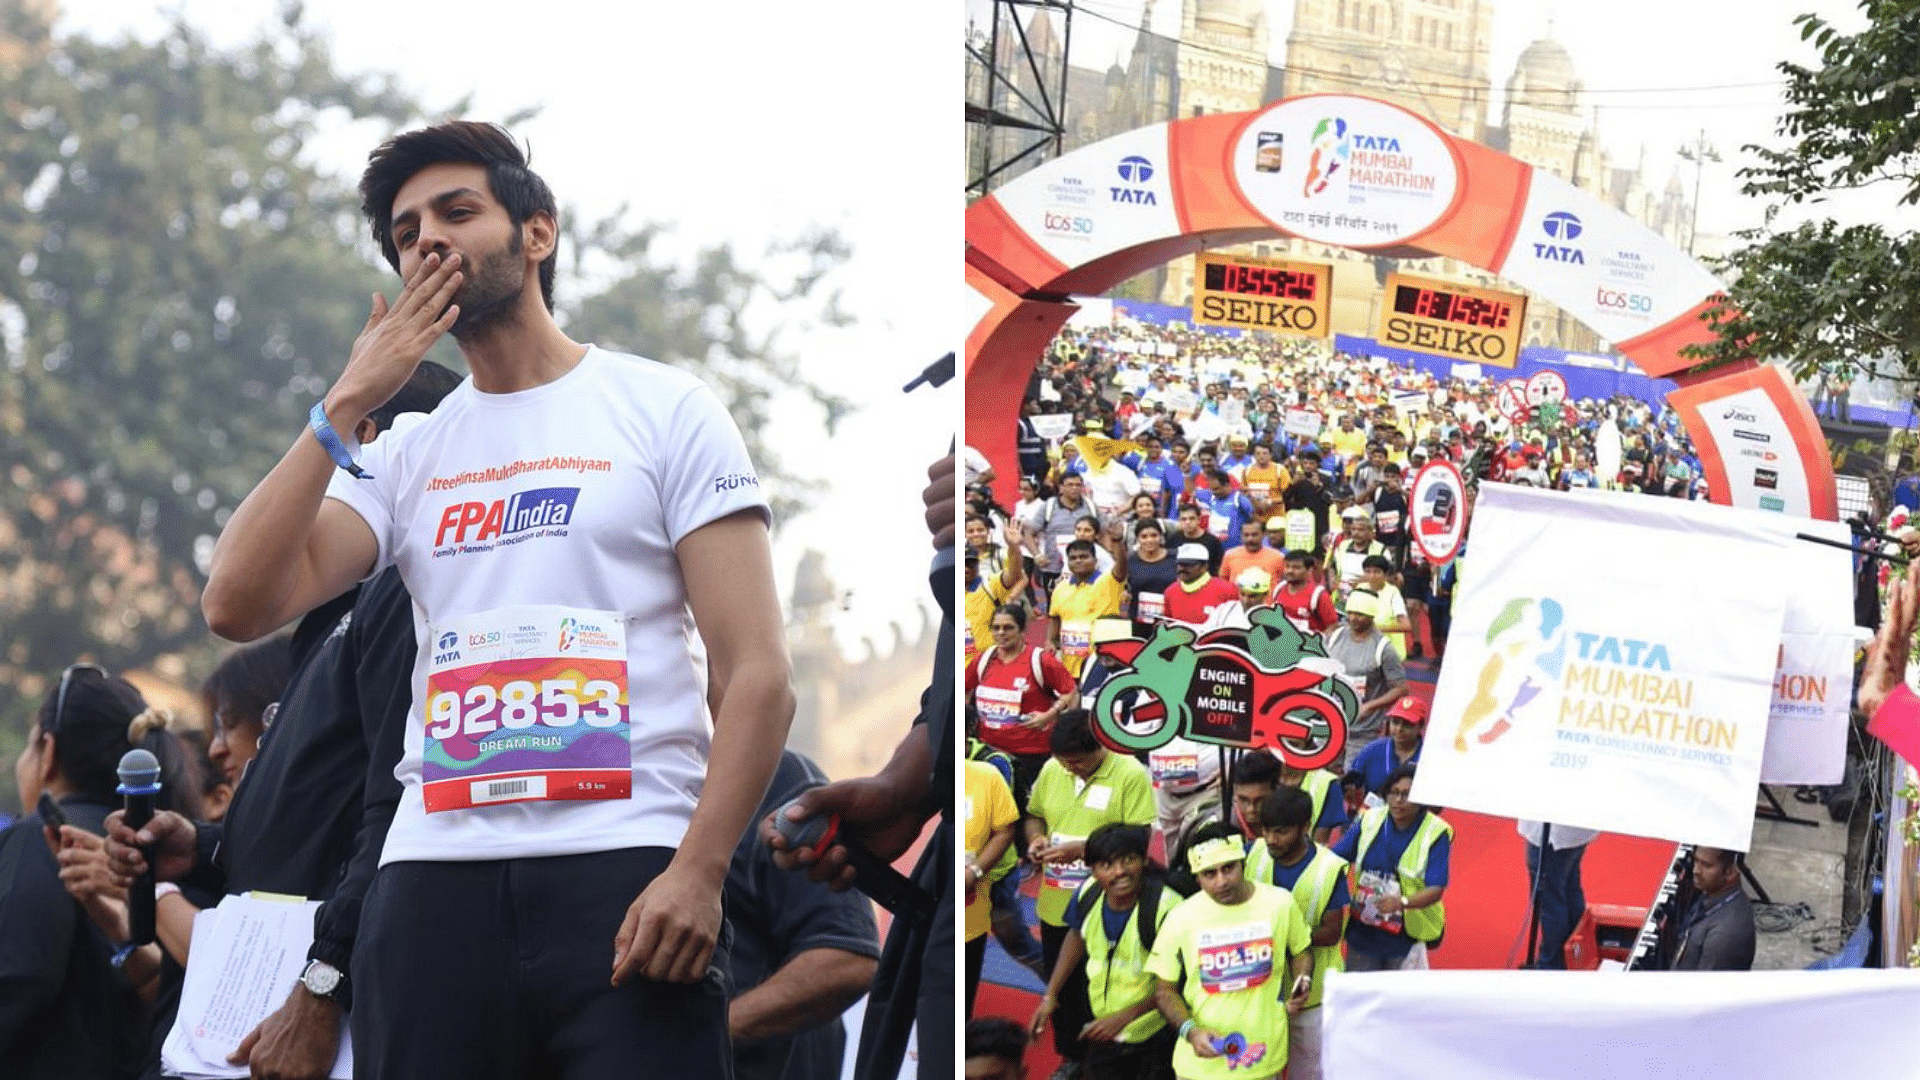 Kartik Aaryan cheers for the participants; The Tata Mumbai Marathon 2019 in full swing. 